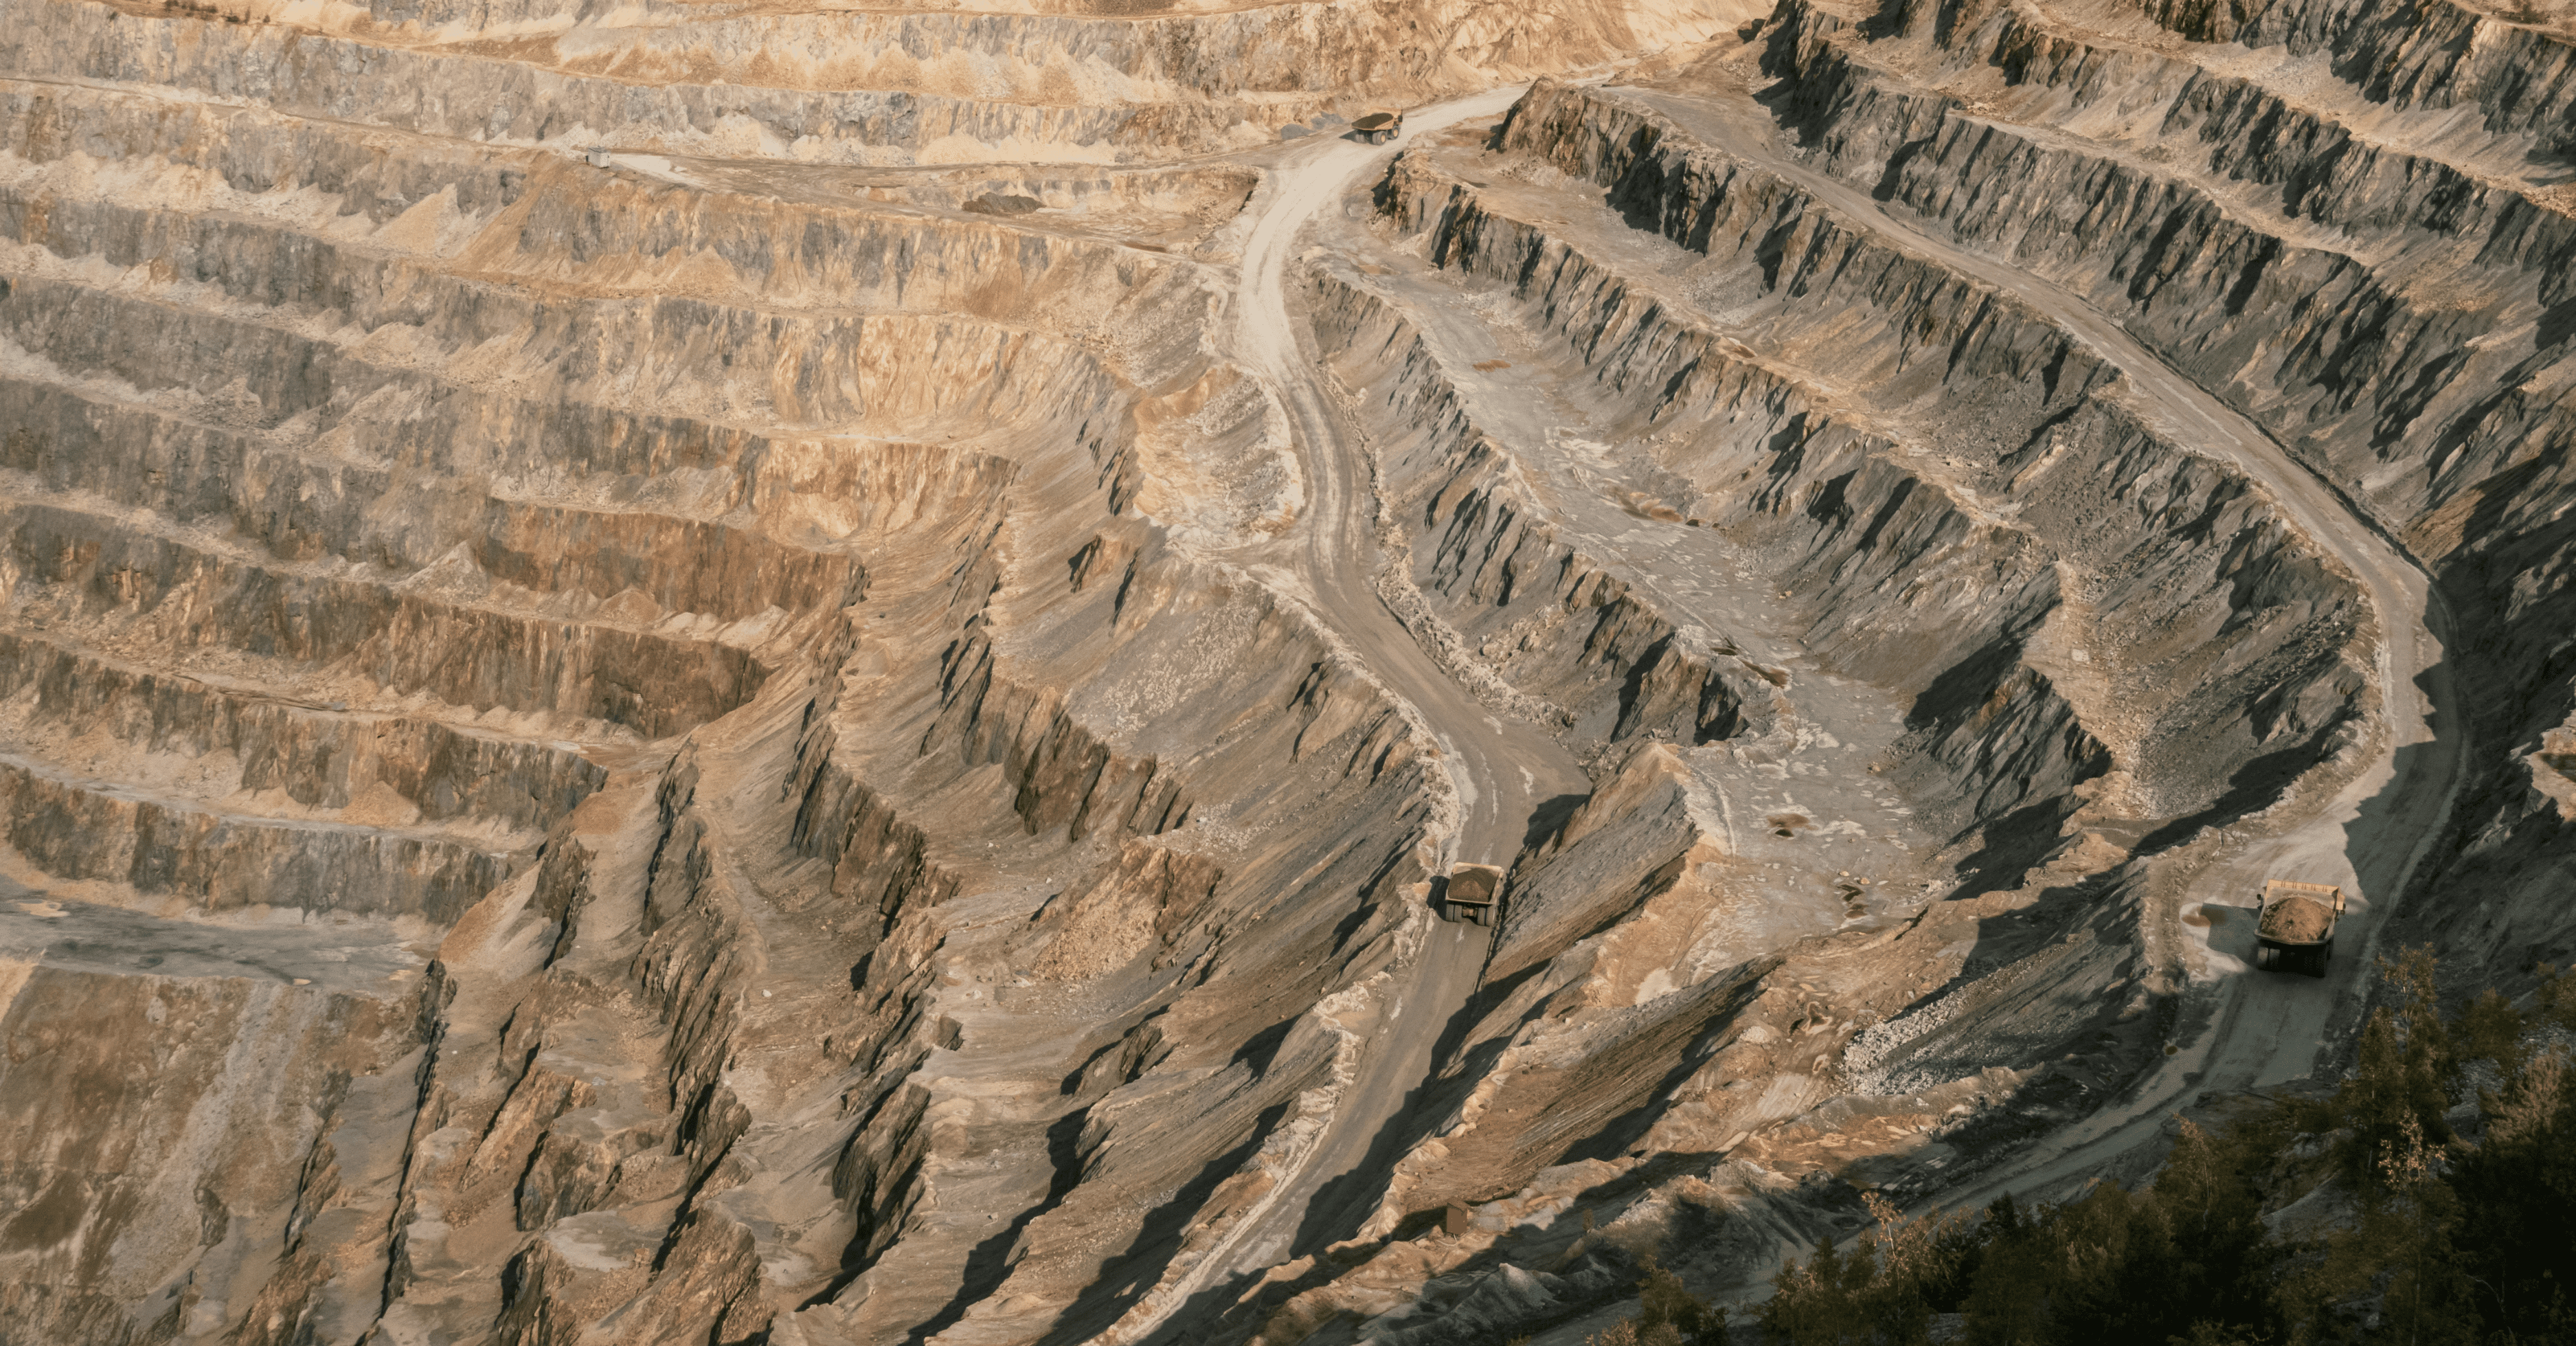 Lavra na Mineração: Uma Abordagem sobre Métodos e Regulamentação